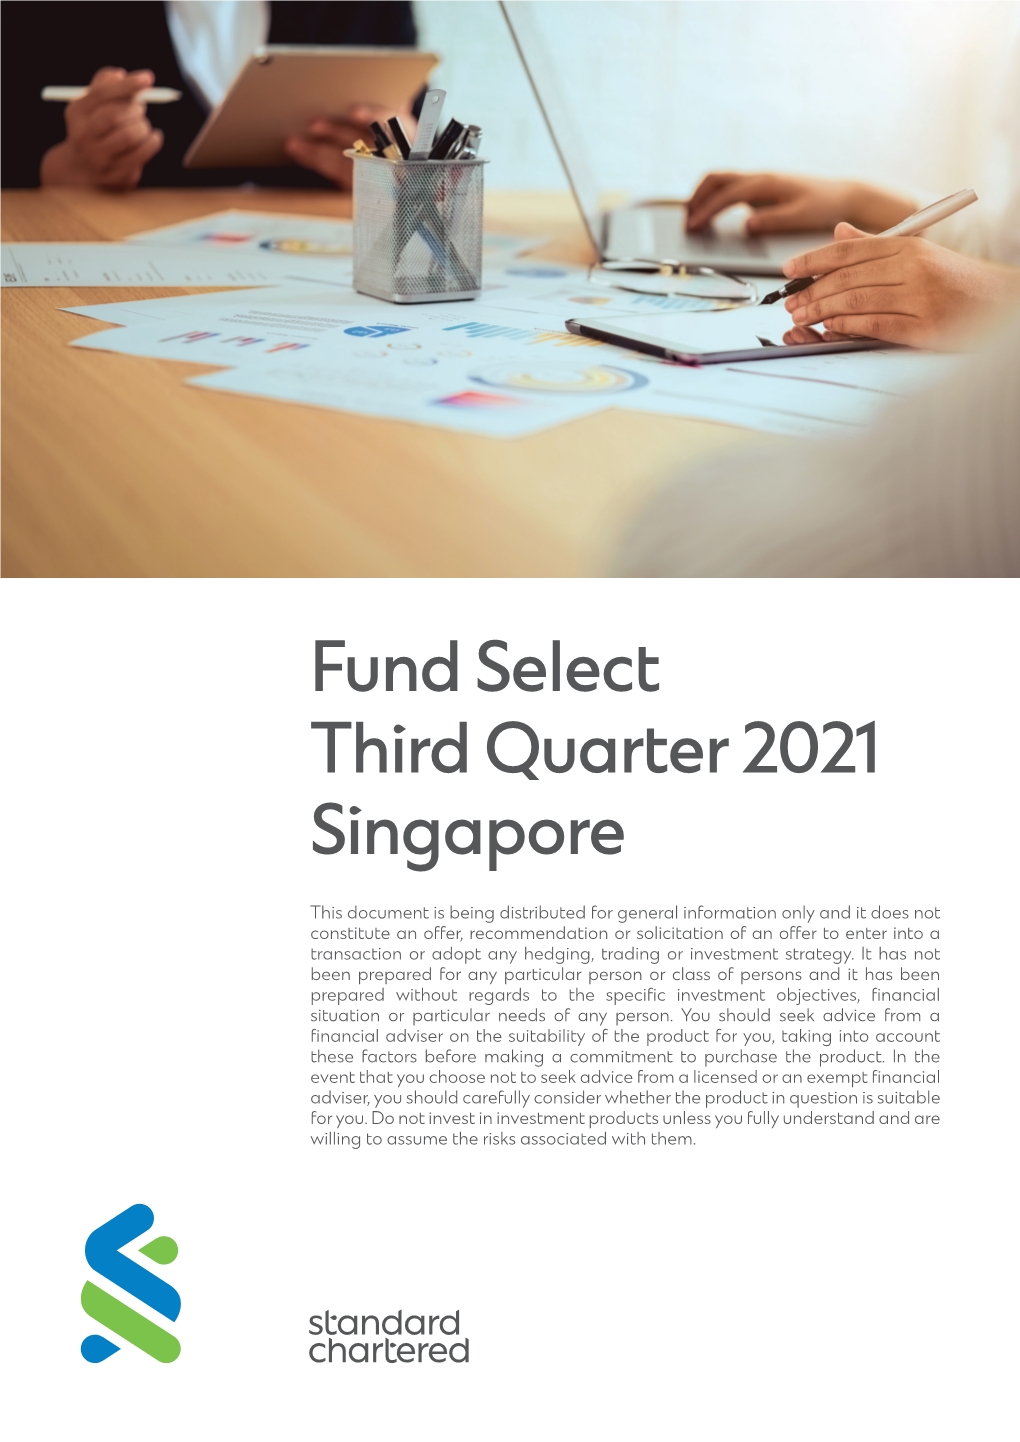 Fund Select Third Quarter 2021 Singapore